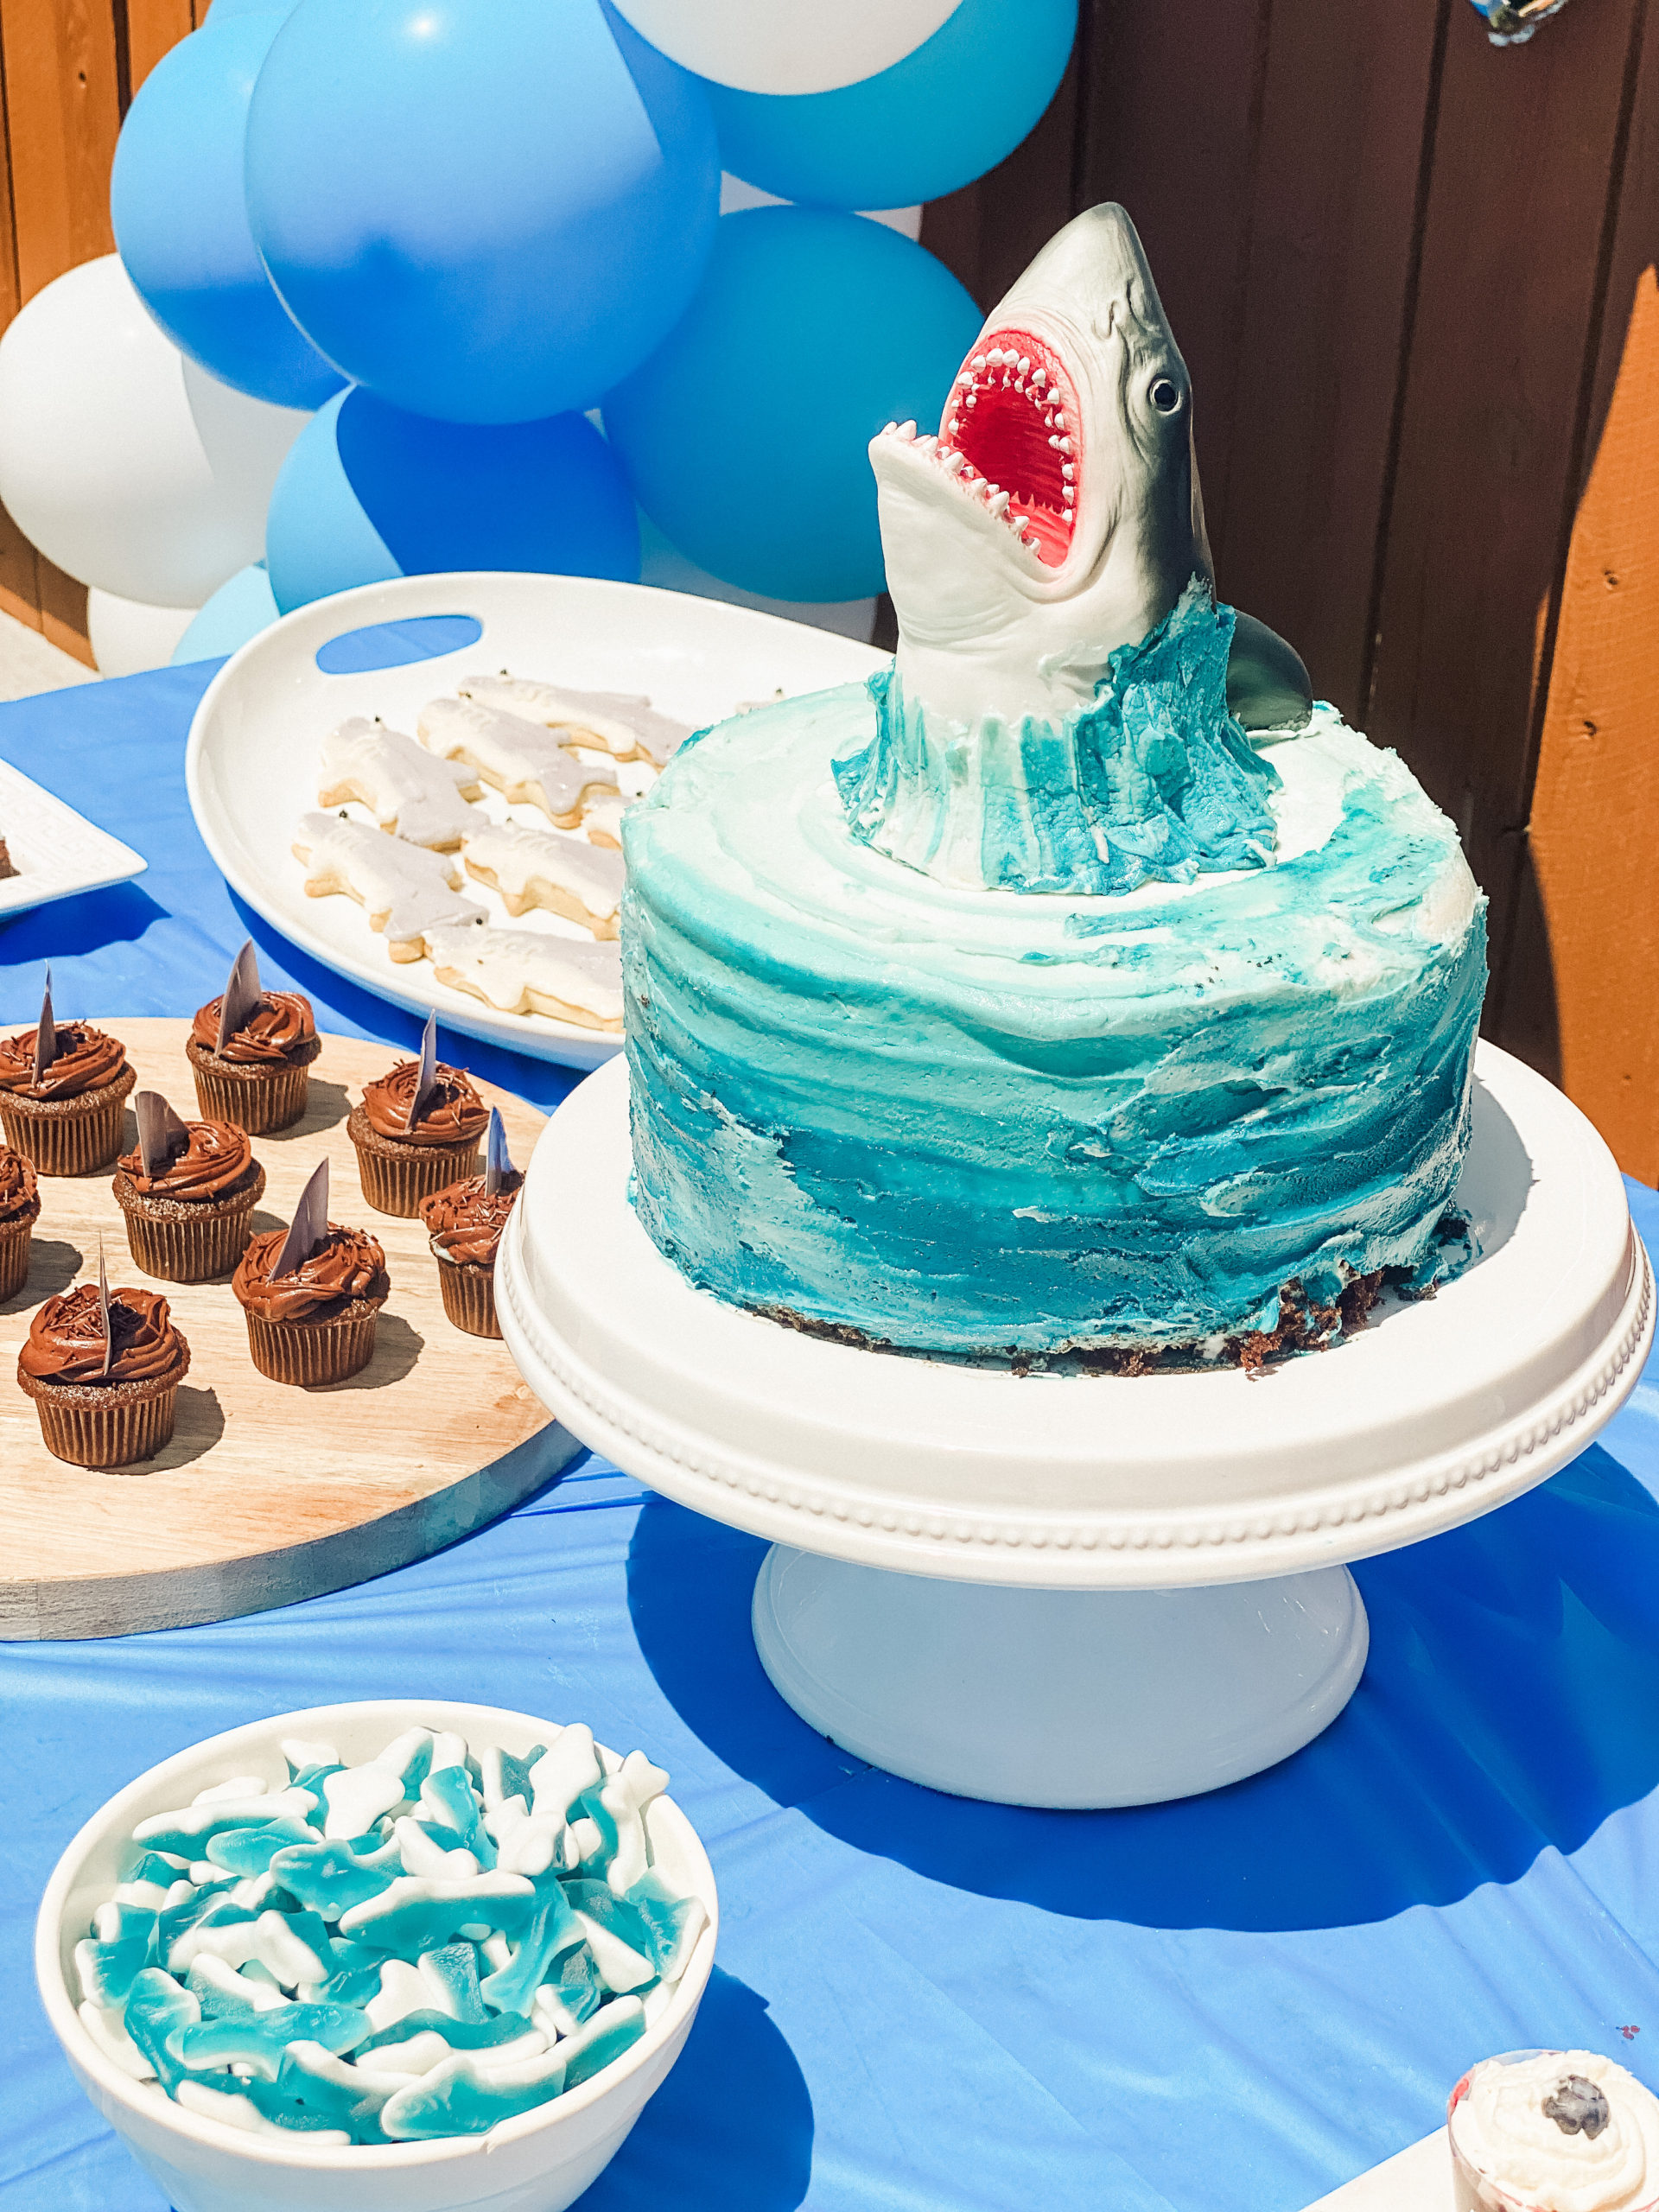 shark party theme 